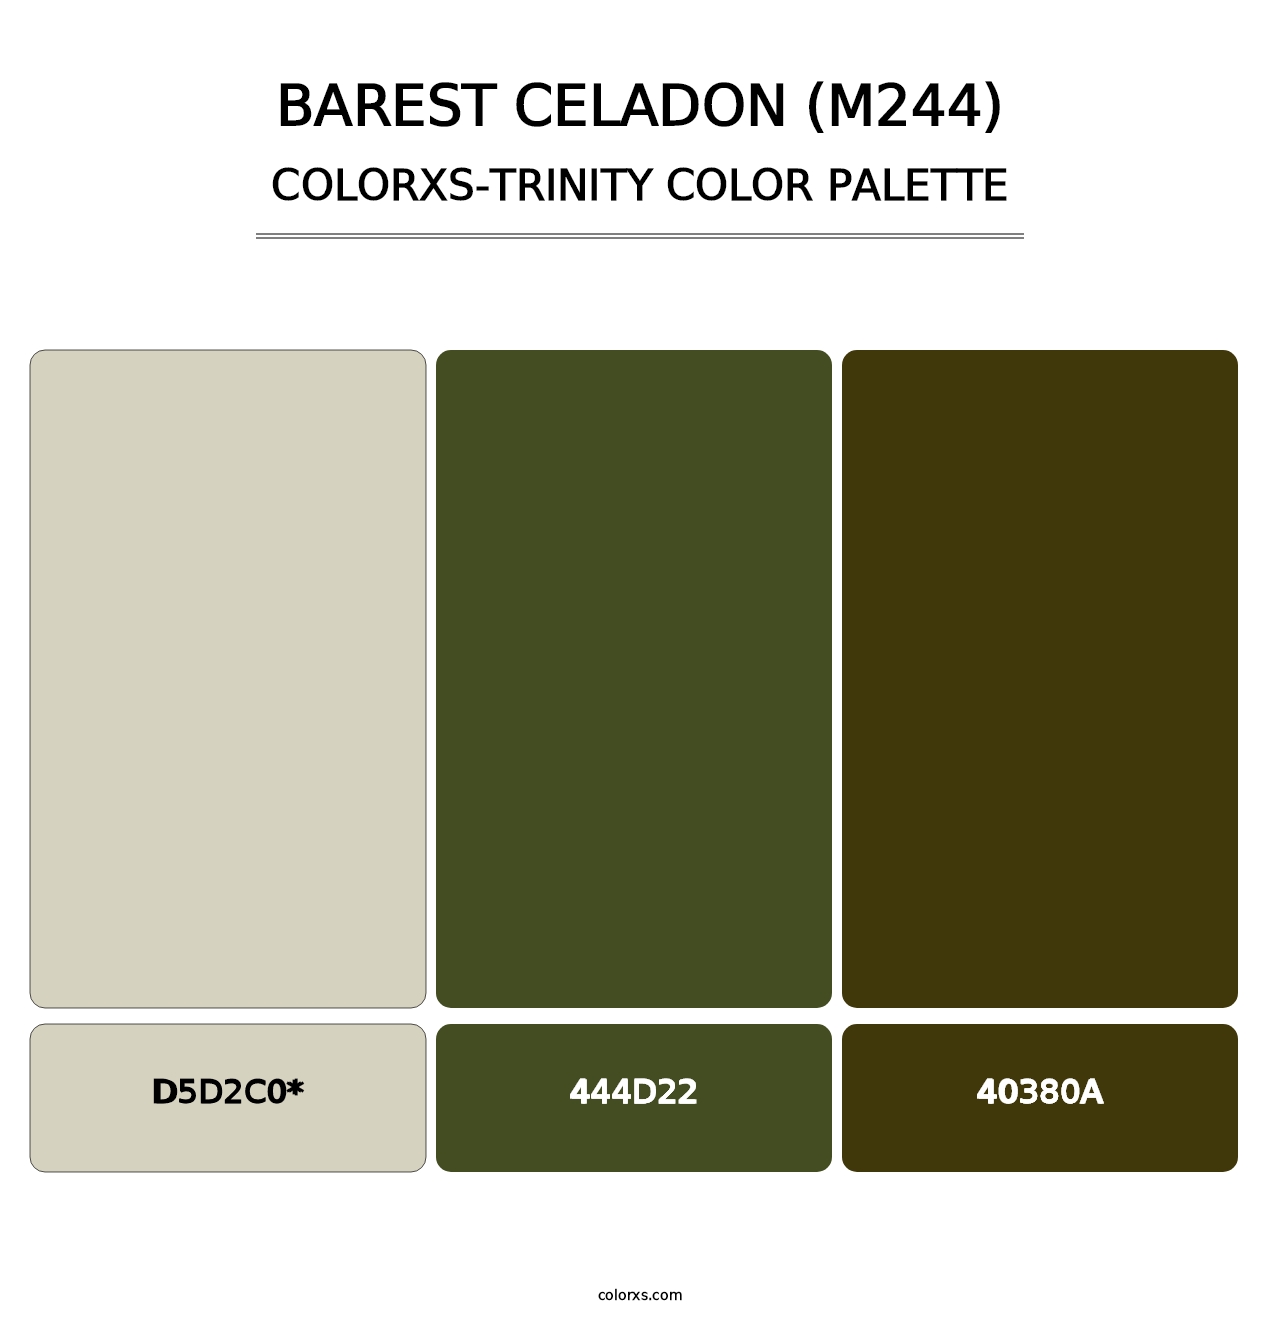 Barest Celadon (M244) - Colorxs Trinity Palette